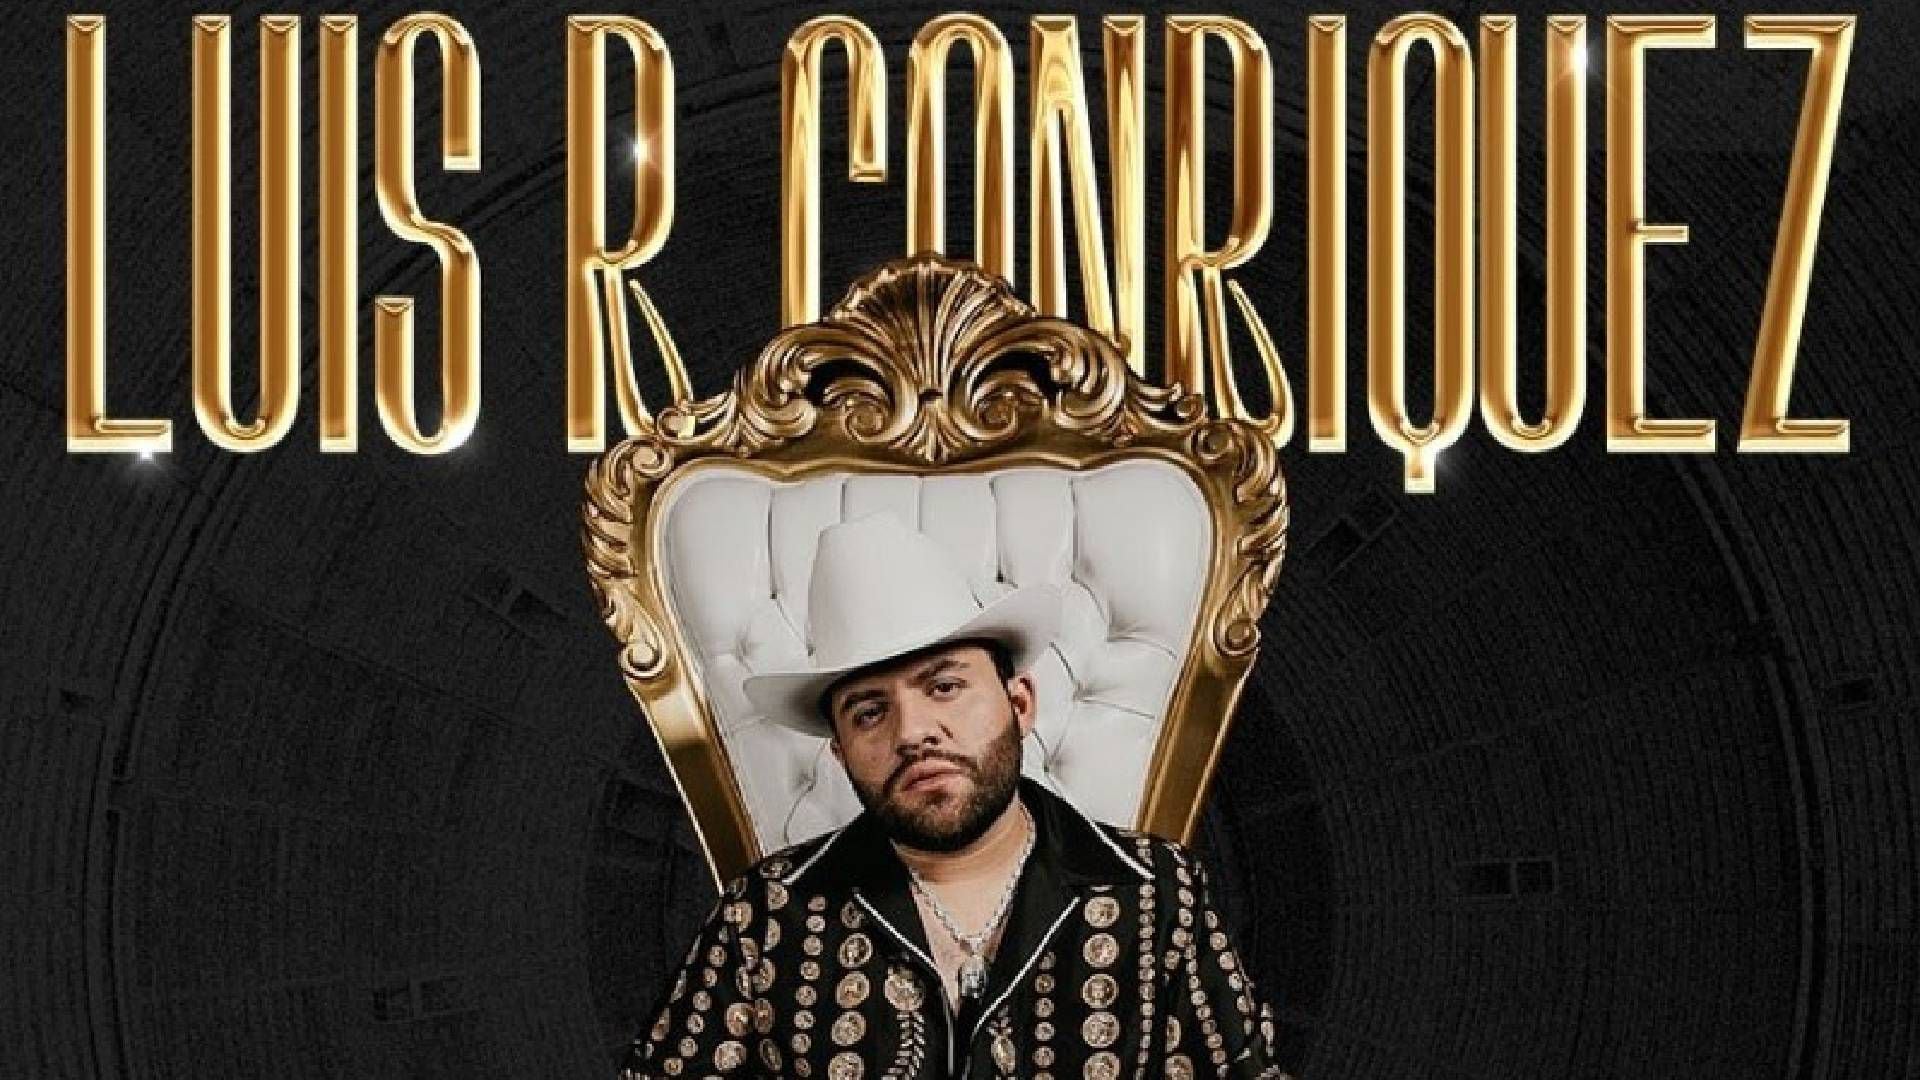 Cancelan concierto de Luis R Conriquez en la Plaza de Toros México: así puedes solicitar tu reembolso